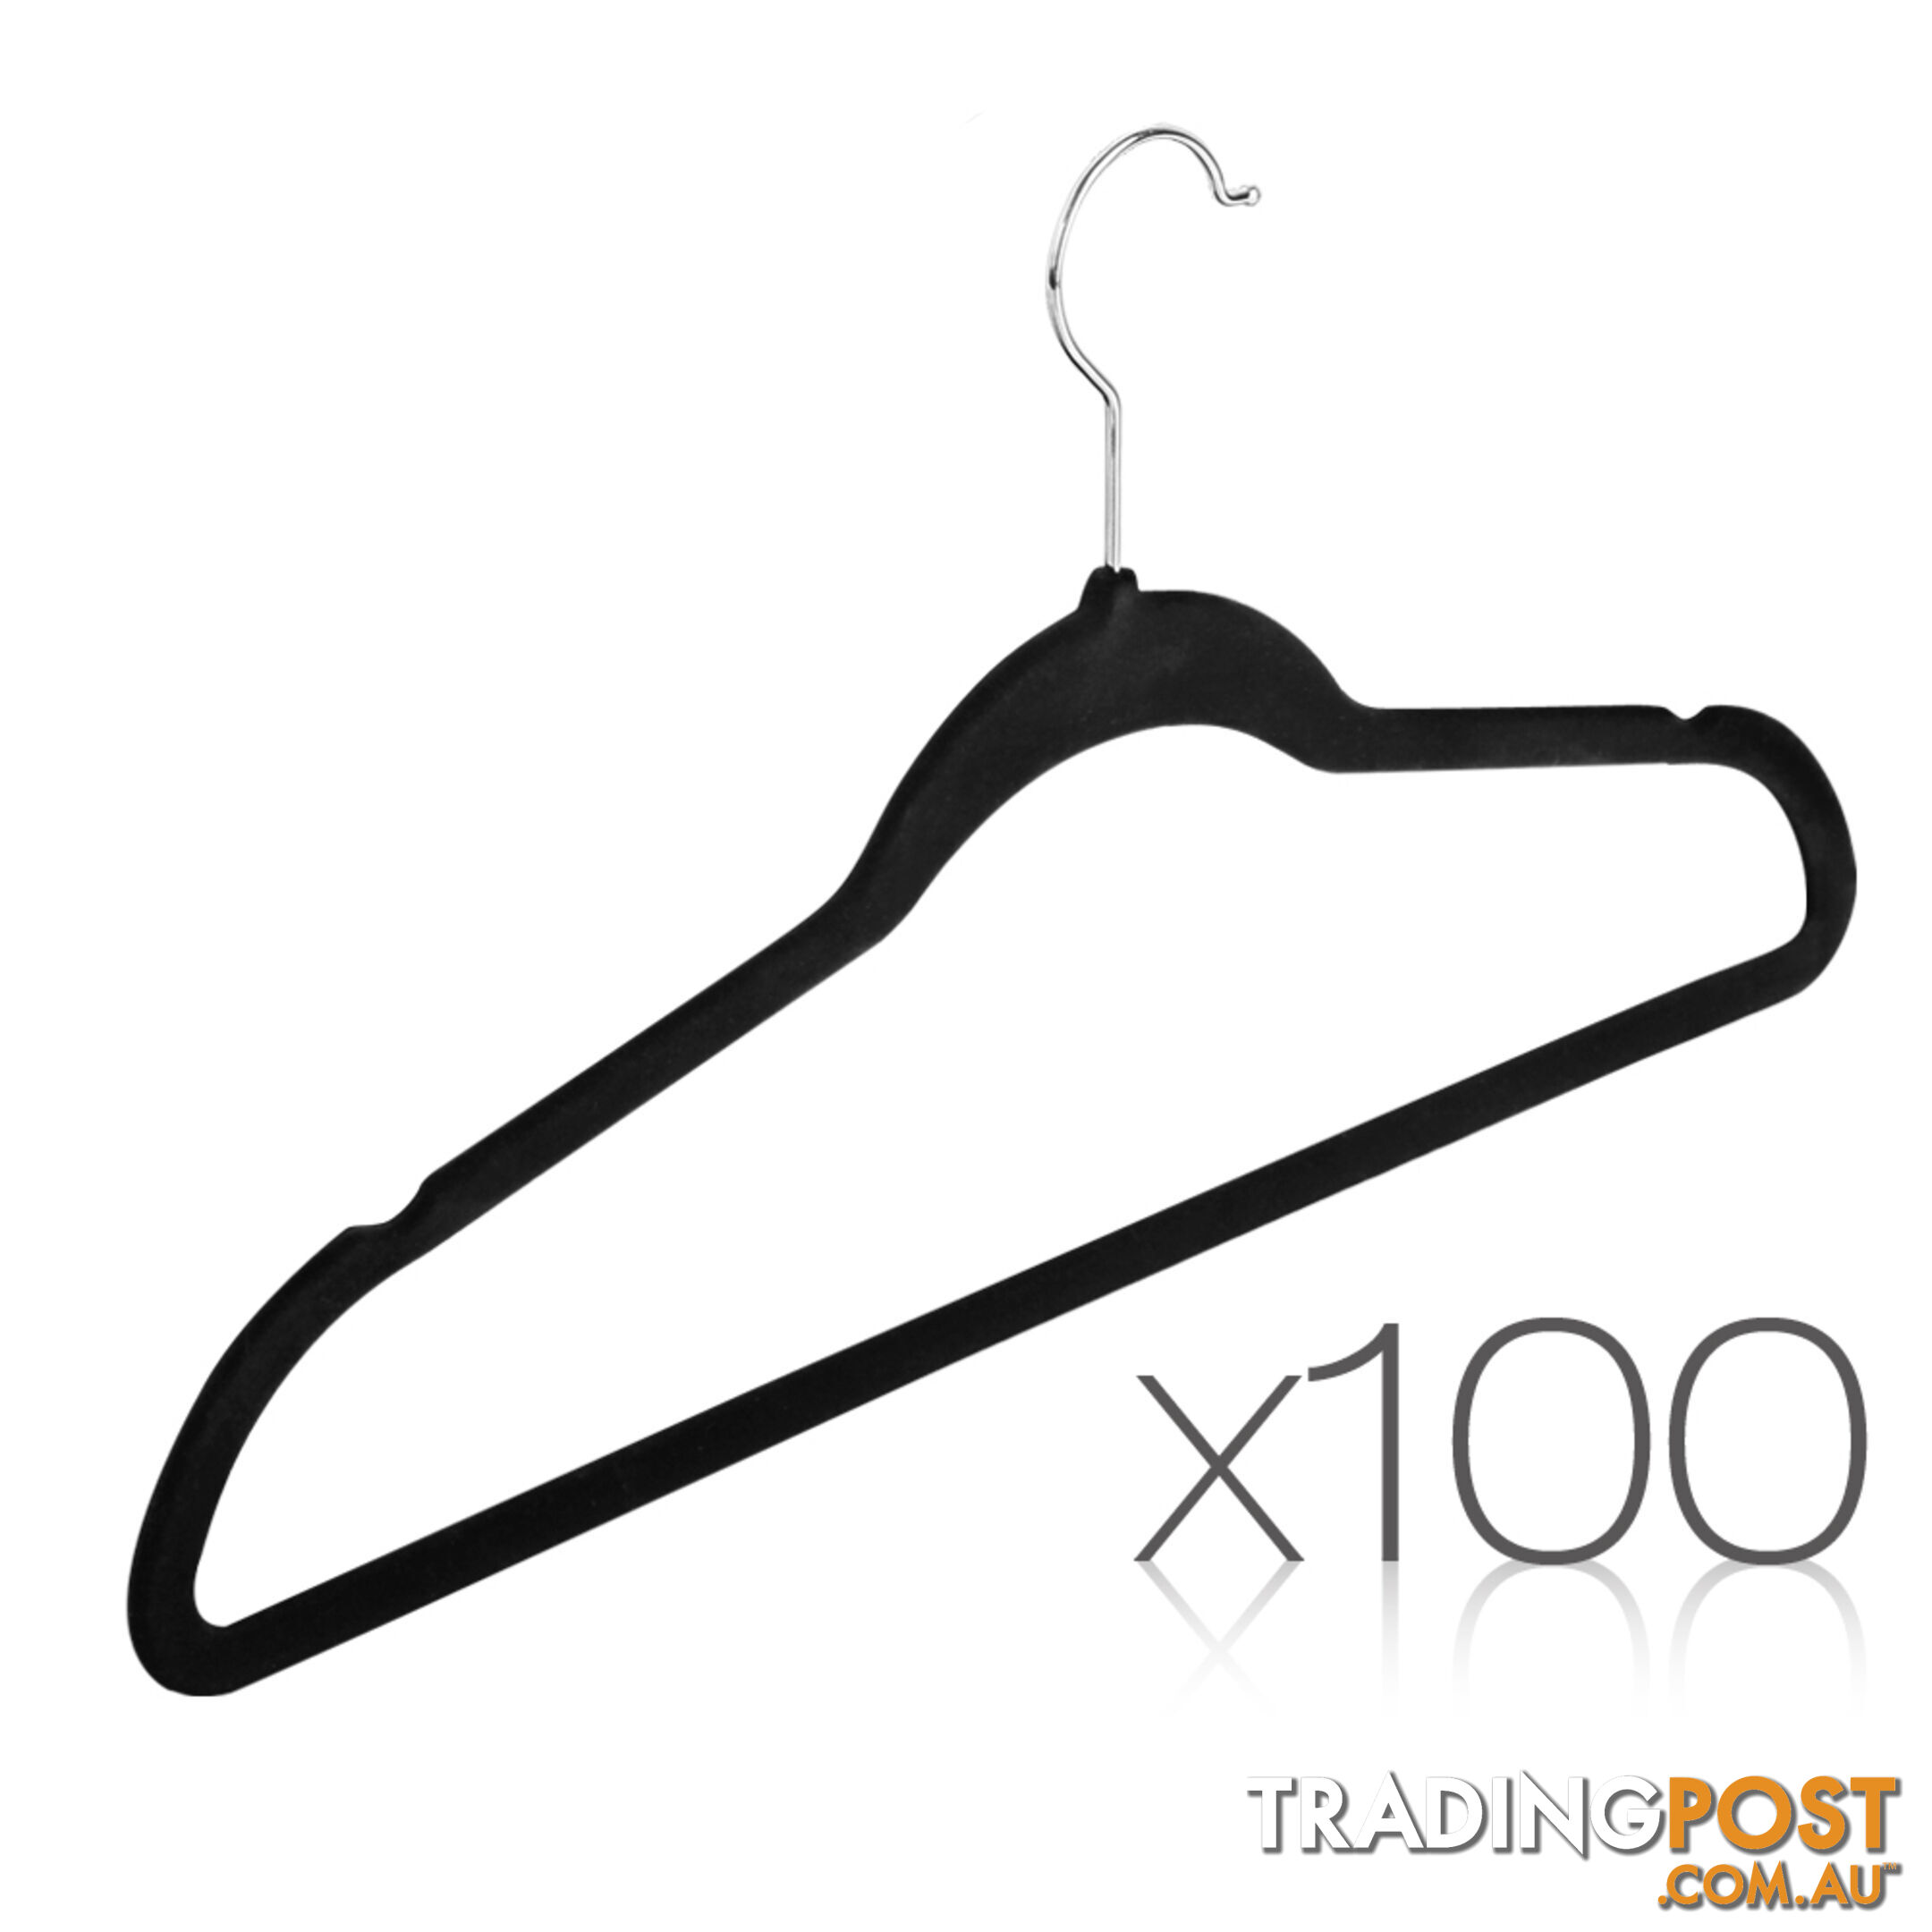 Set of 100 Velvet Coat Hangers